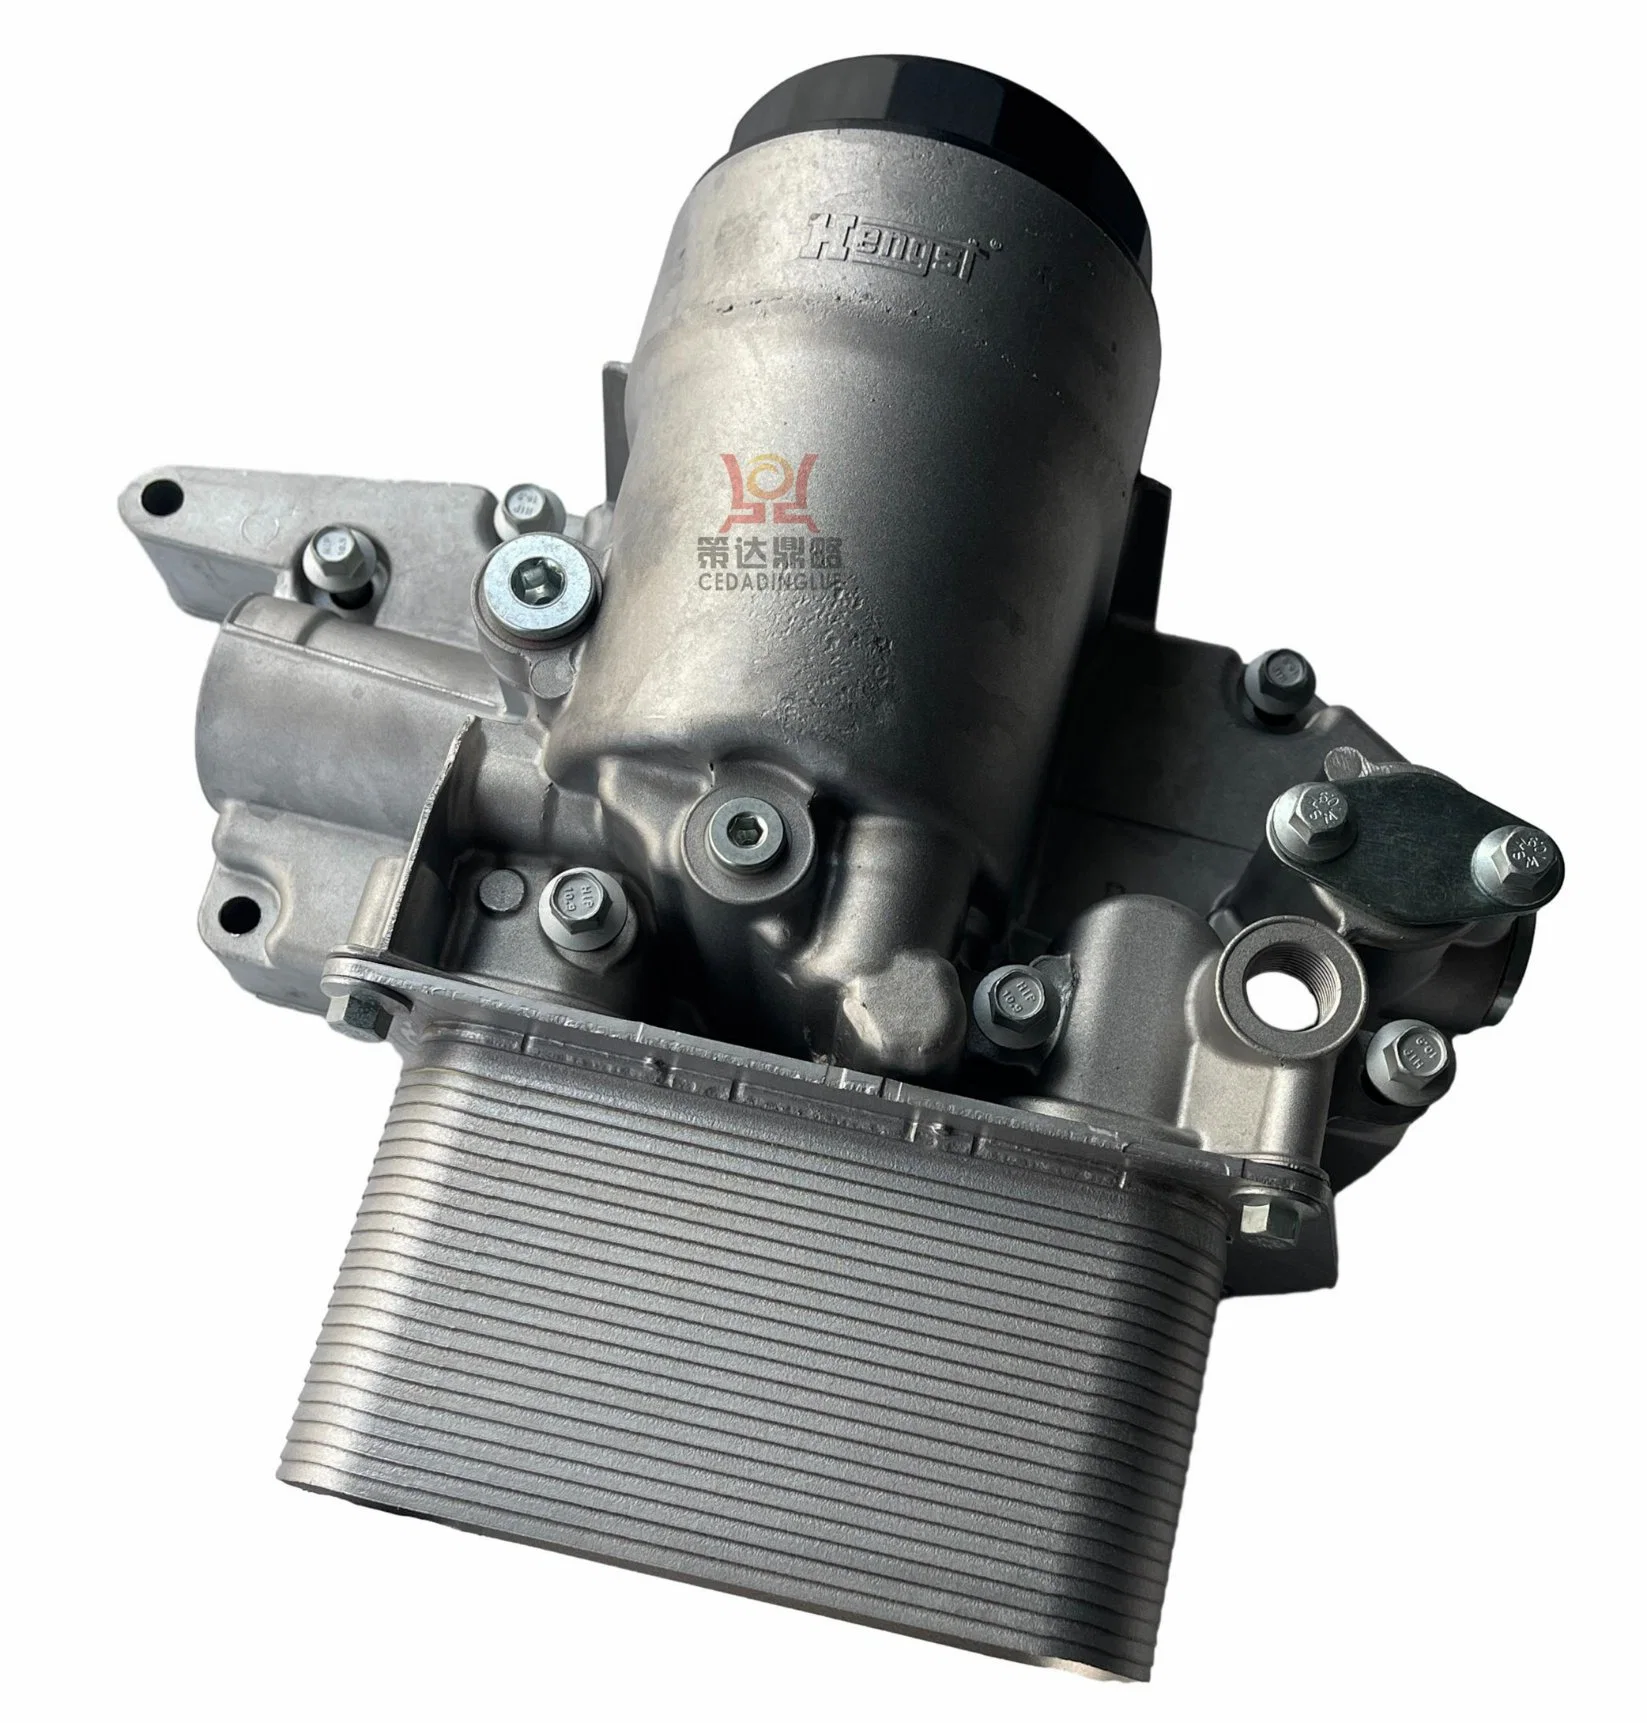 Diesel Engine Bf4m2012 Volvo Oil Cooler Box 04506191 for Deutz Engine